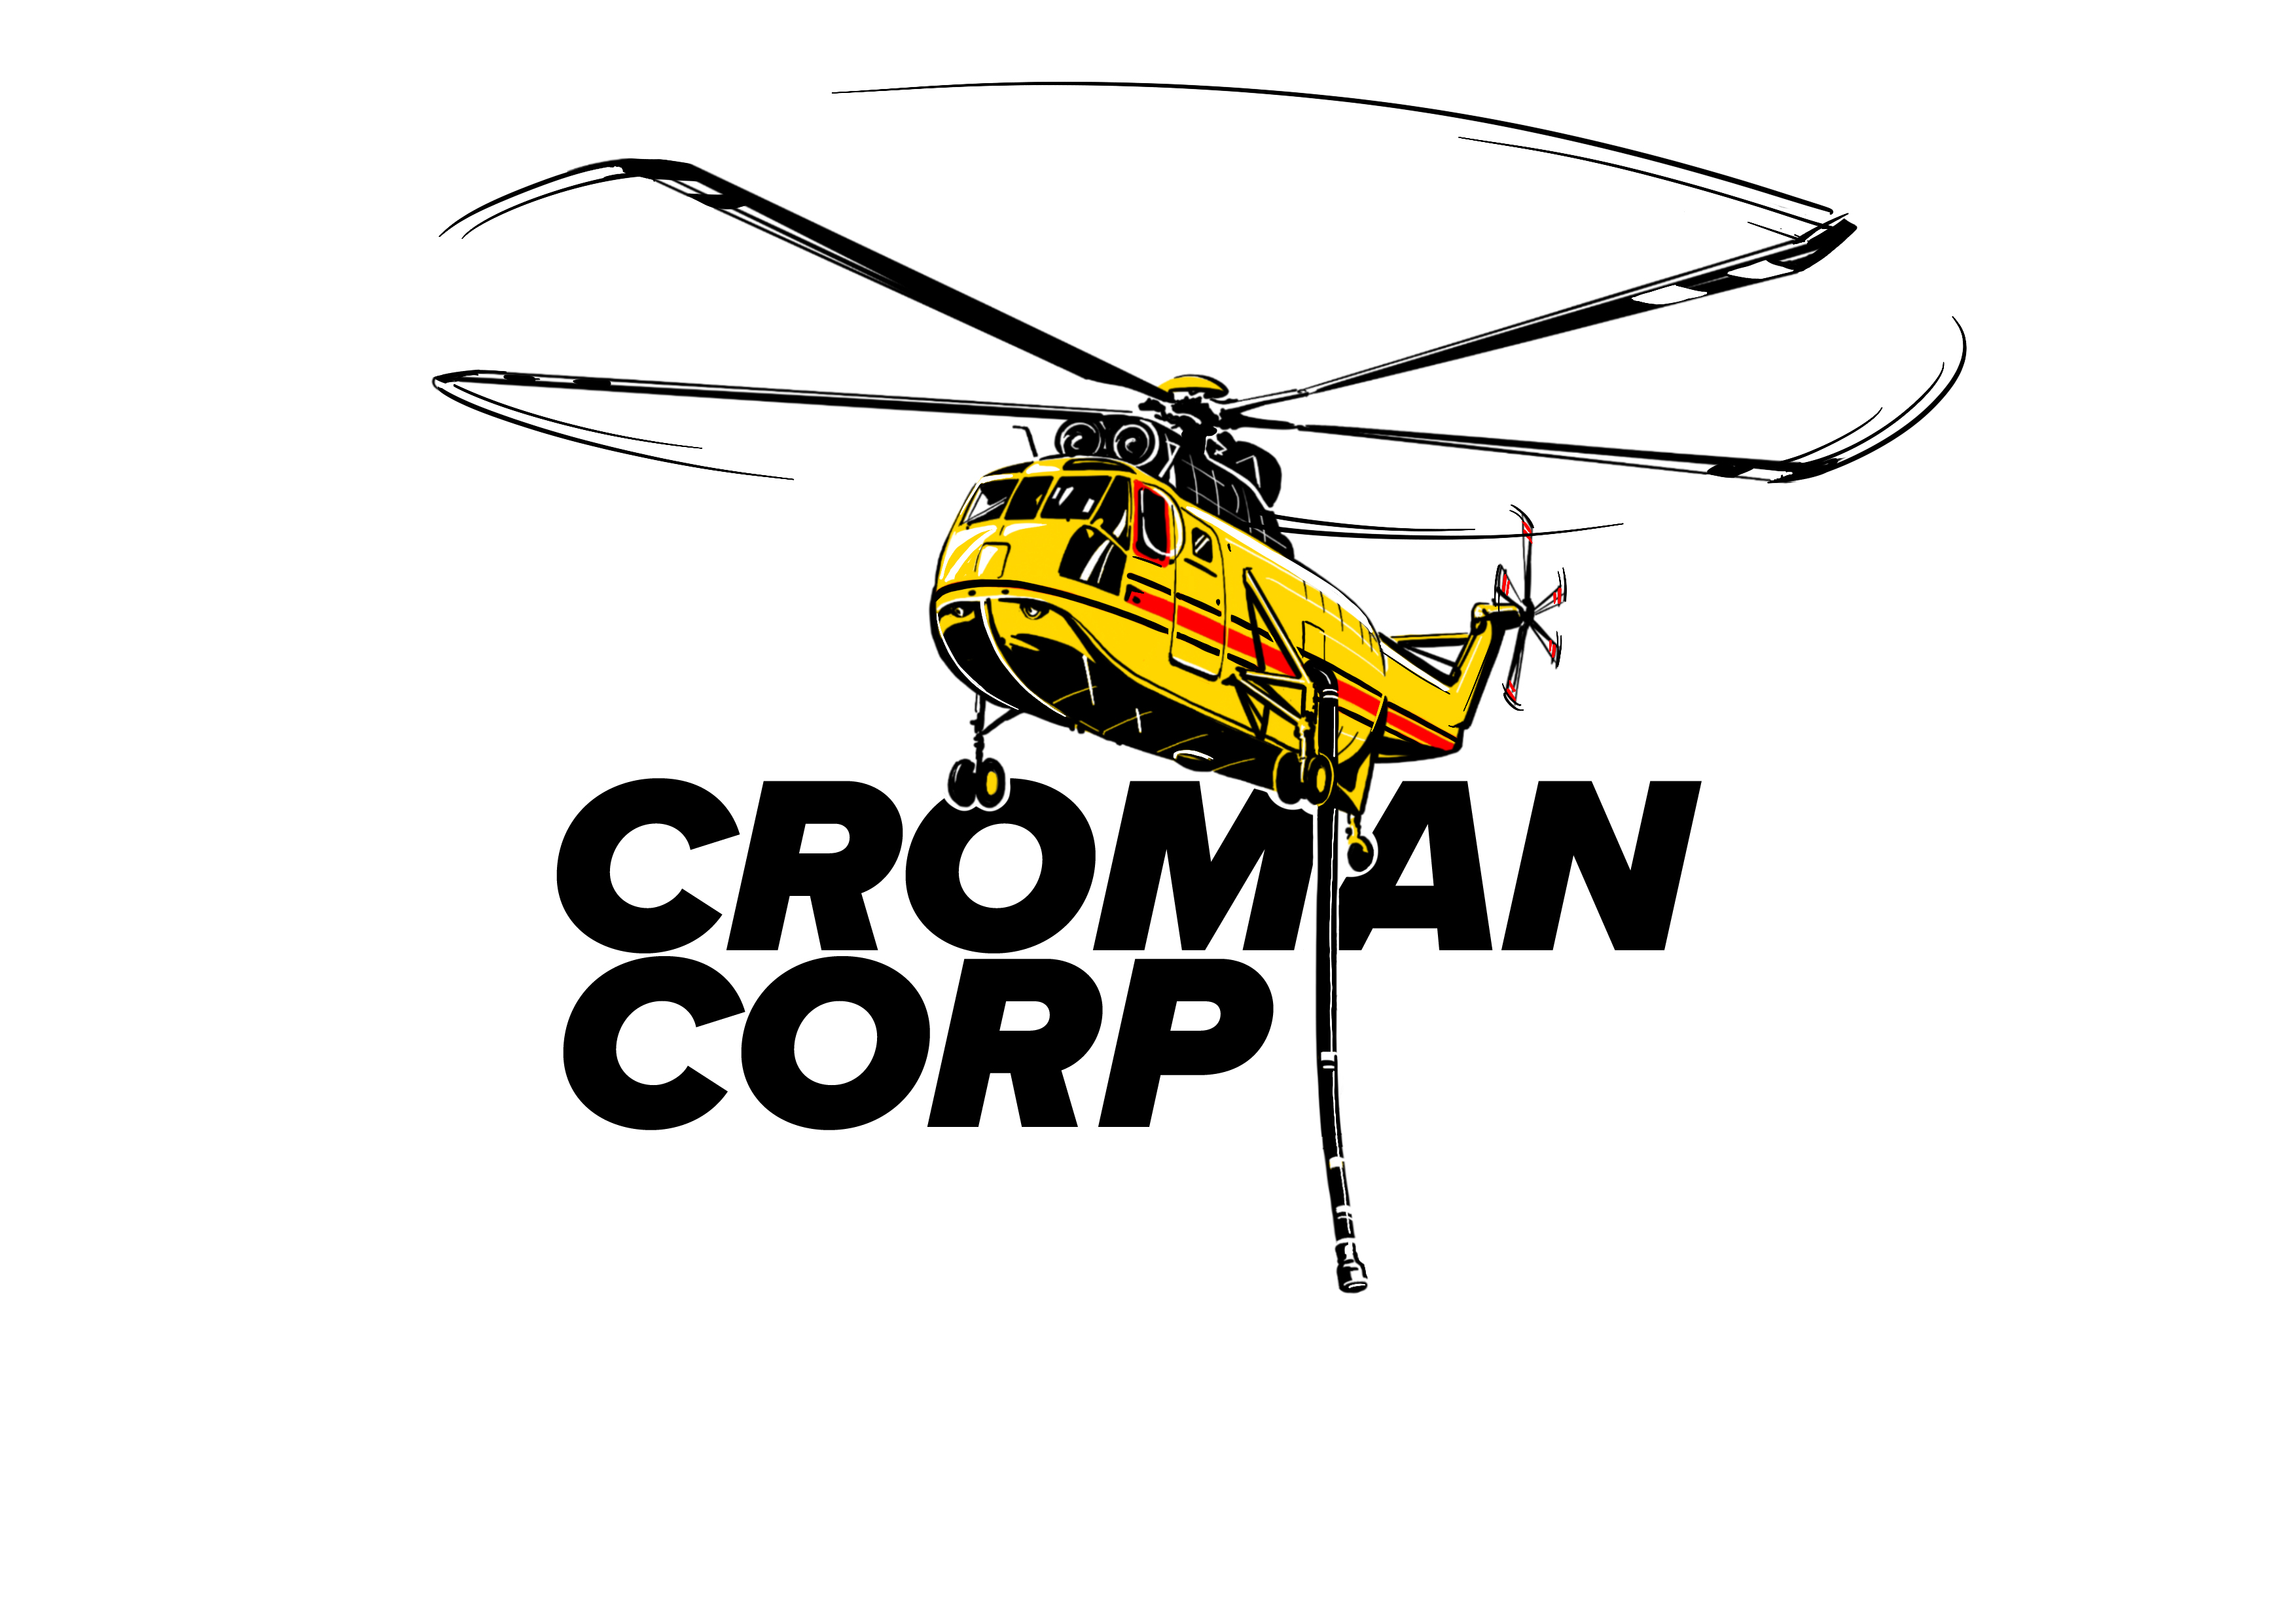 Croman Corp.